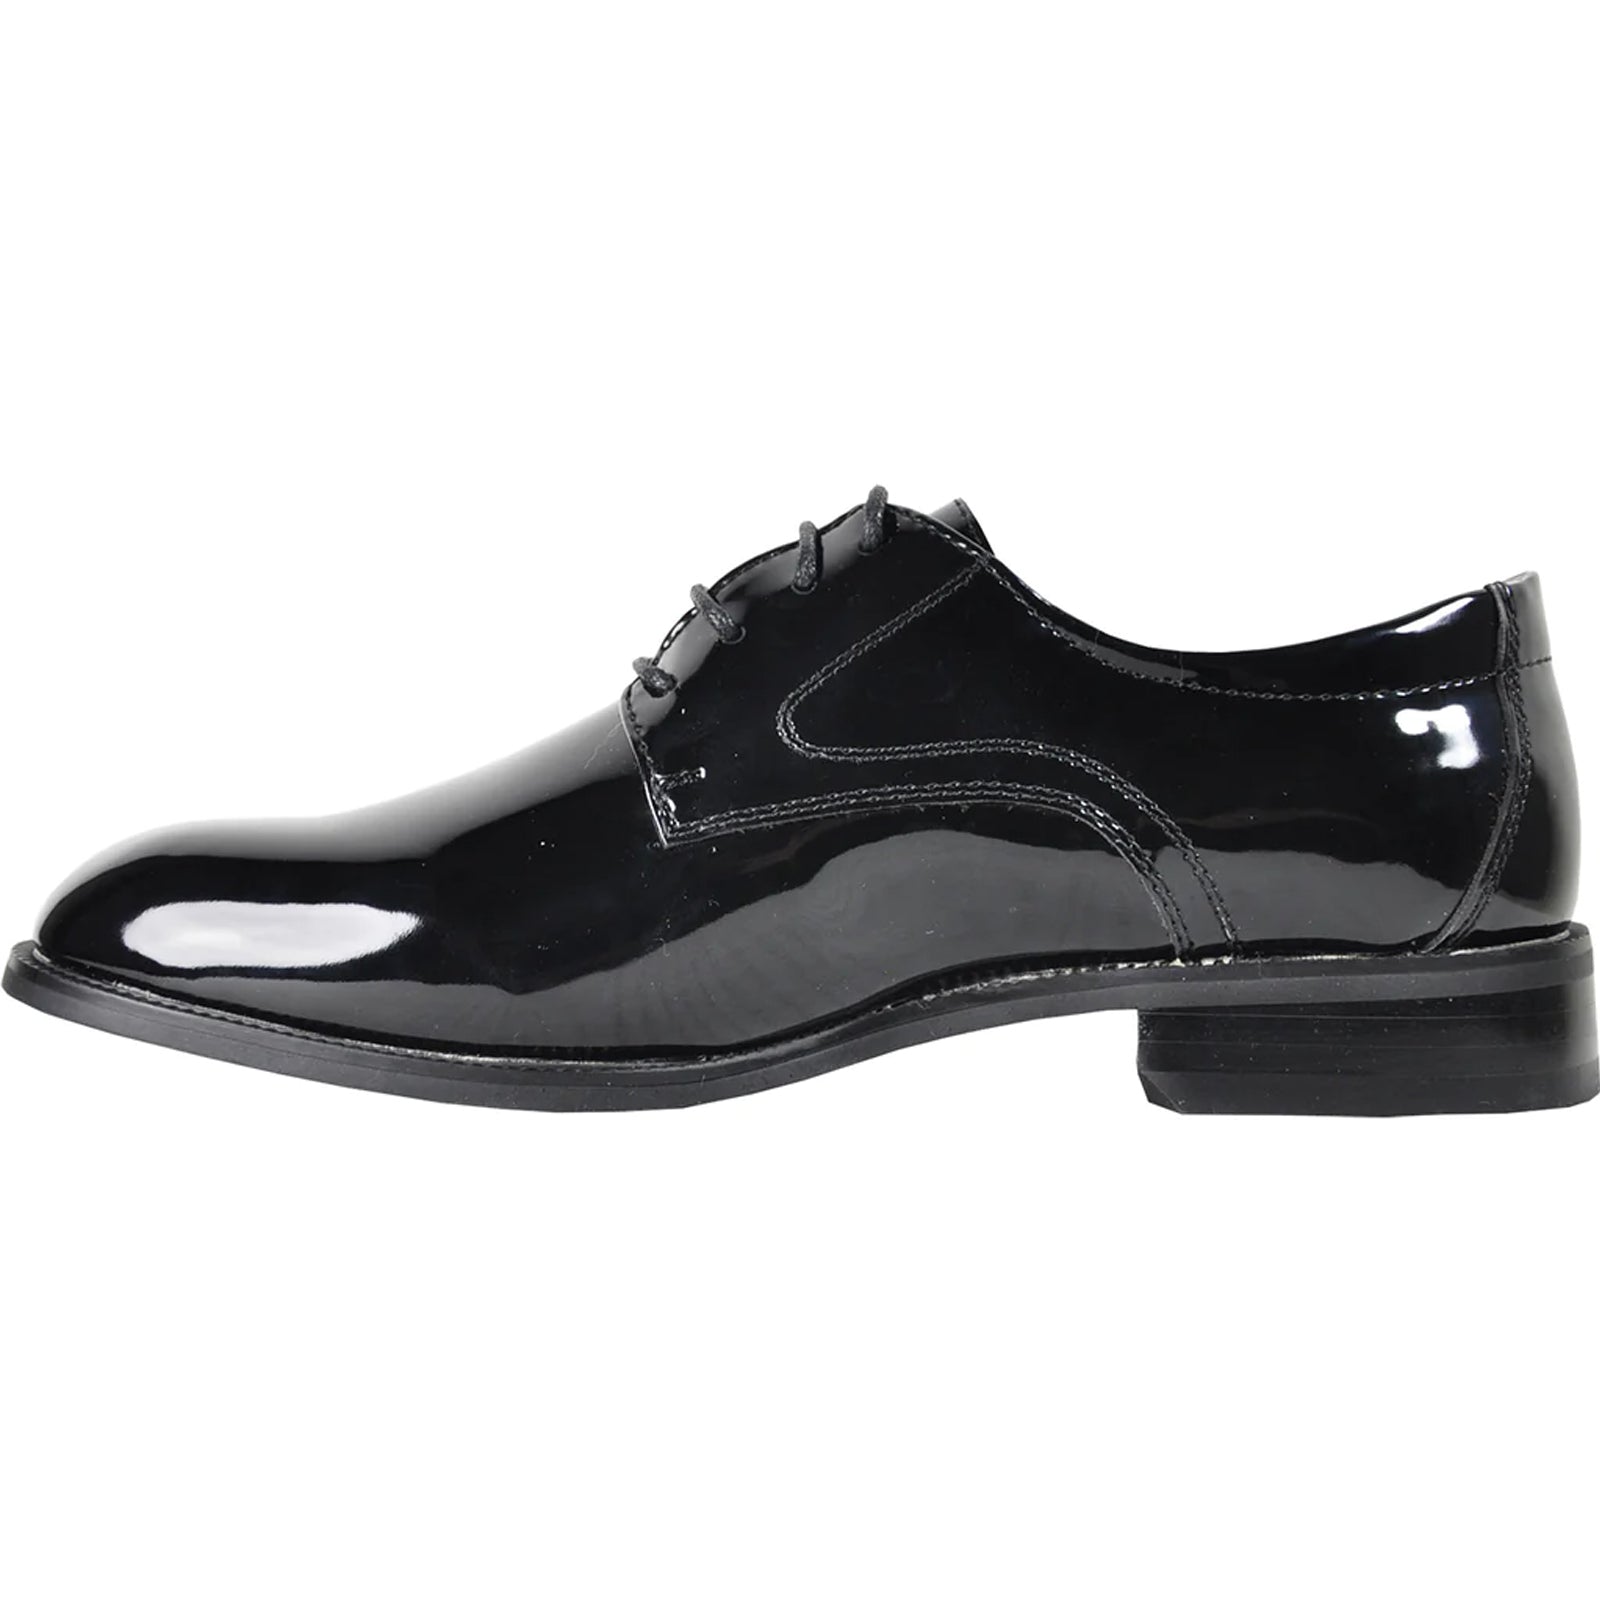 "Black Patent Tuxedo Shoe - Men's Plain Round Toe Style"